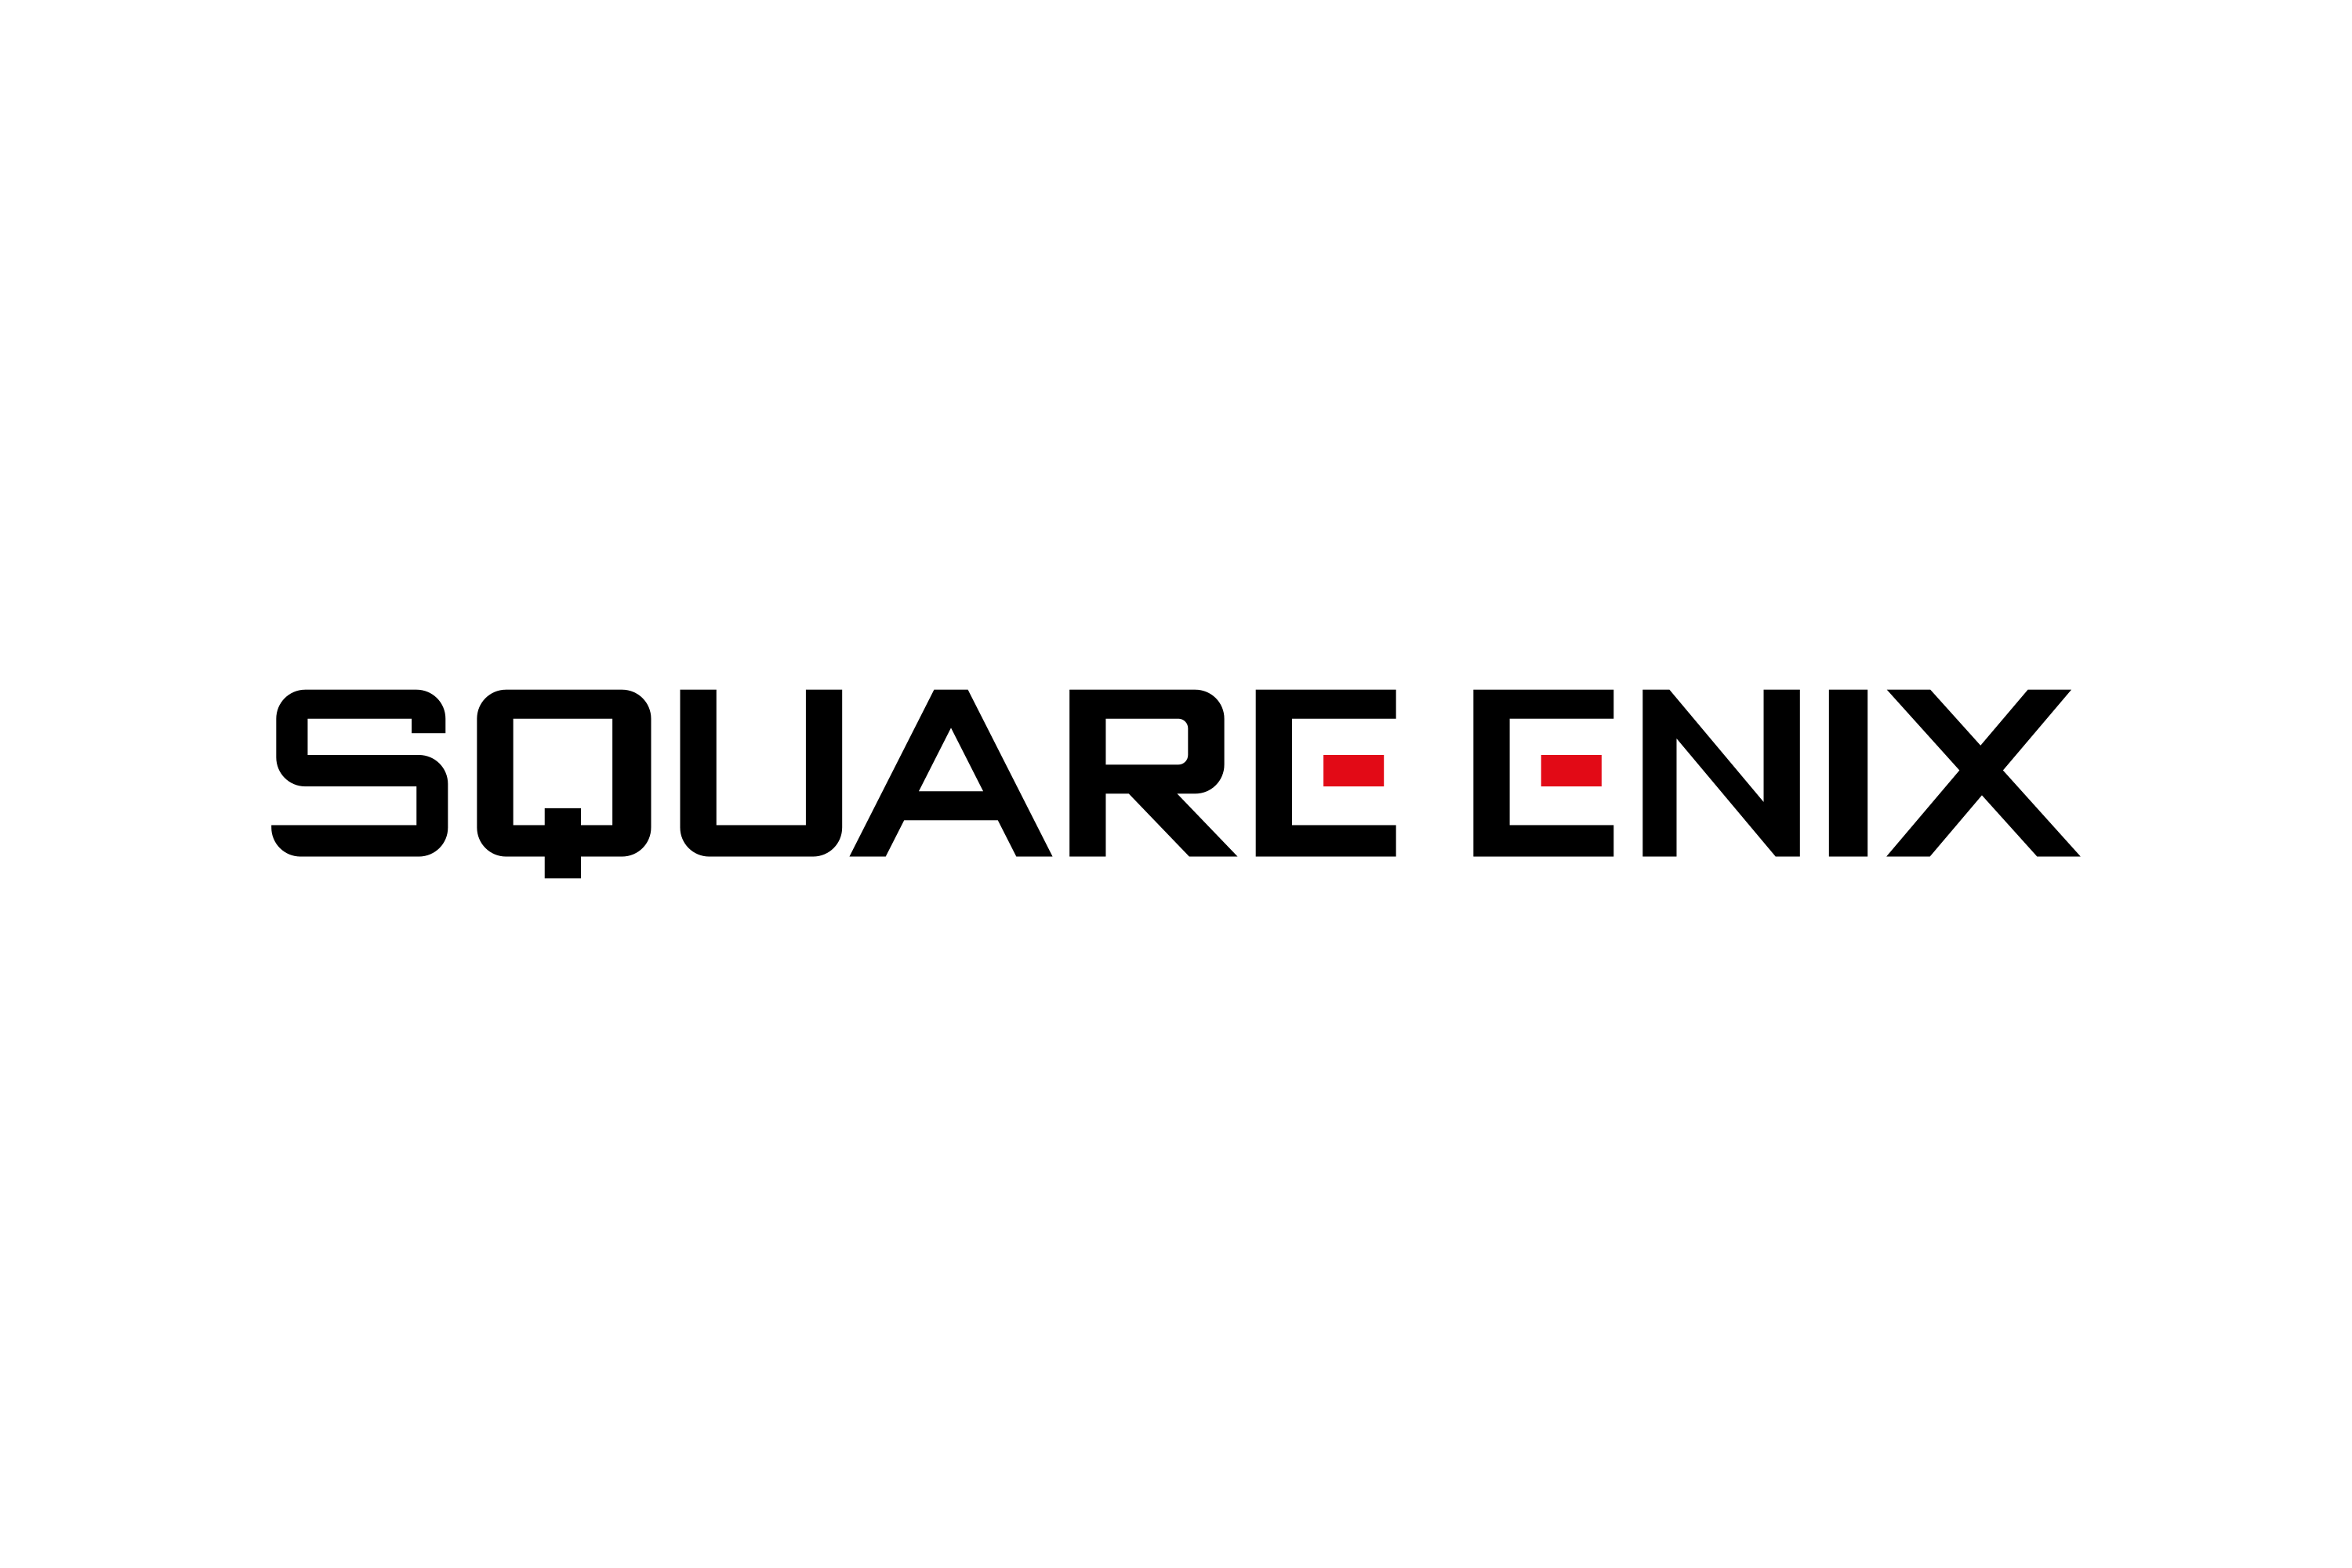 Square Enix Logo Png - KibrisPDR